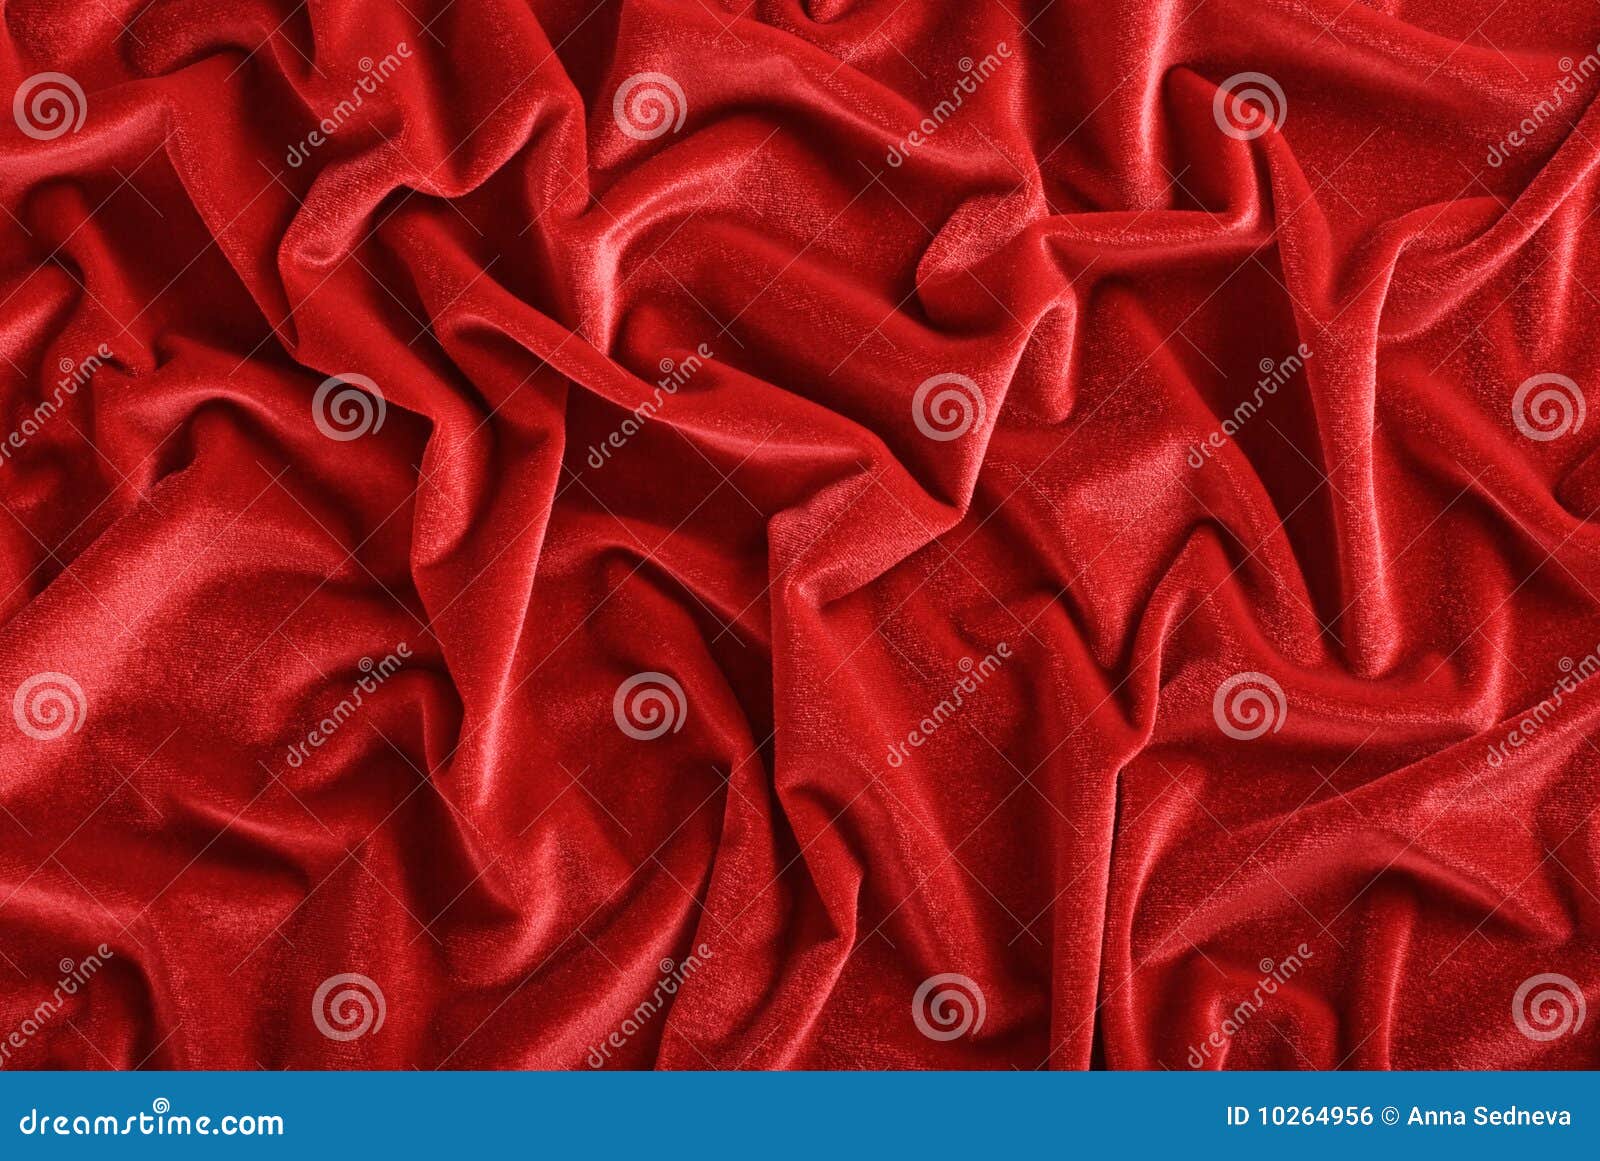 dark red velvet background